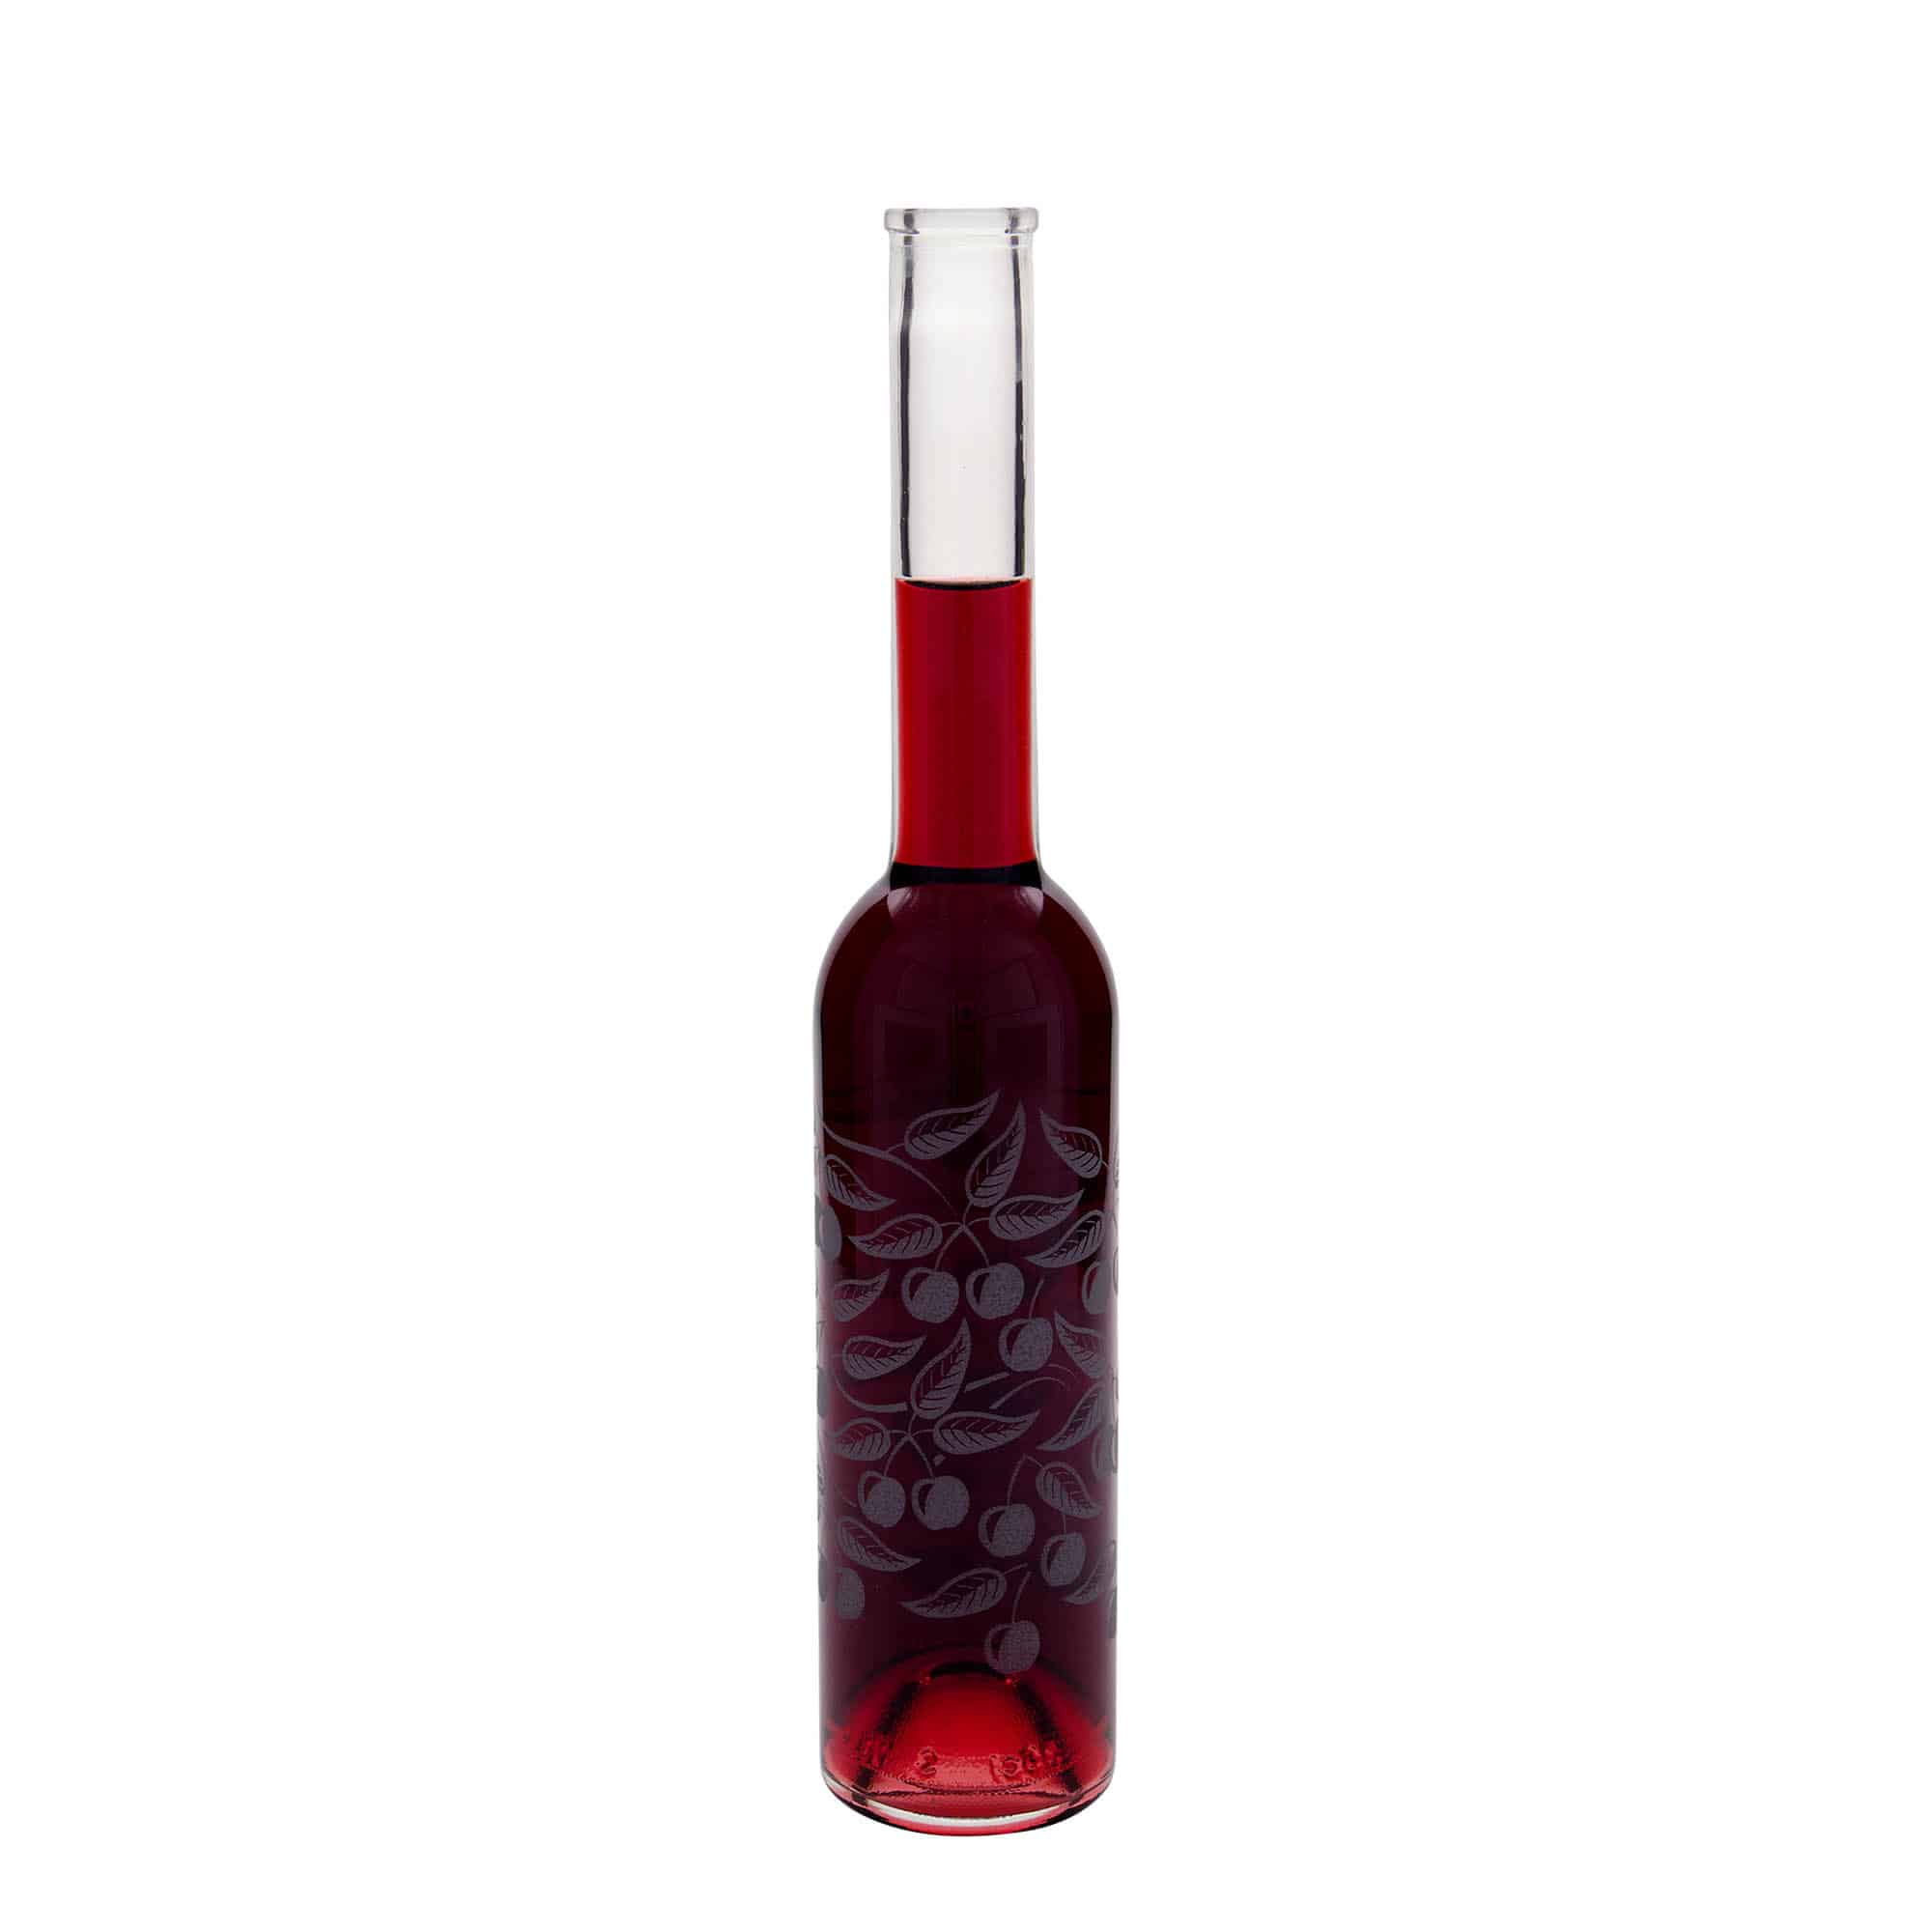 350 ml butelka szklana 'Opera', wzór: czereśnie, zamknięcie: korek